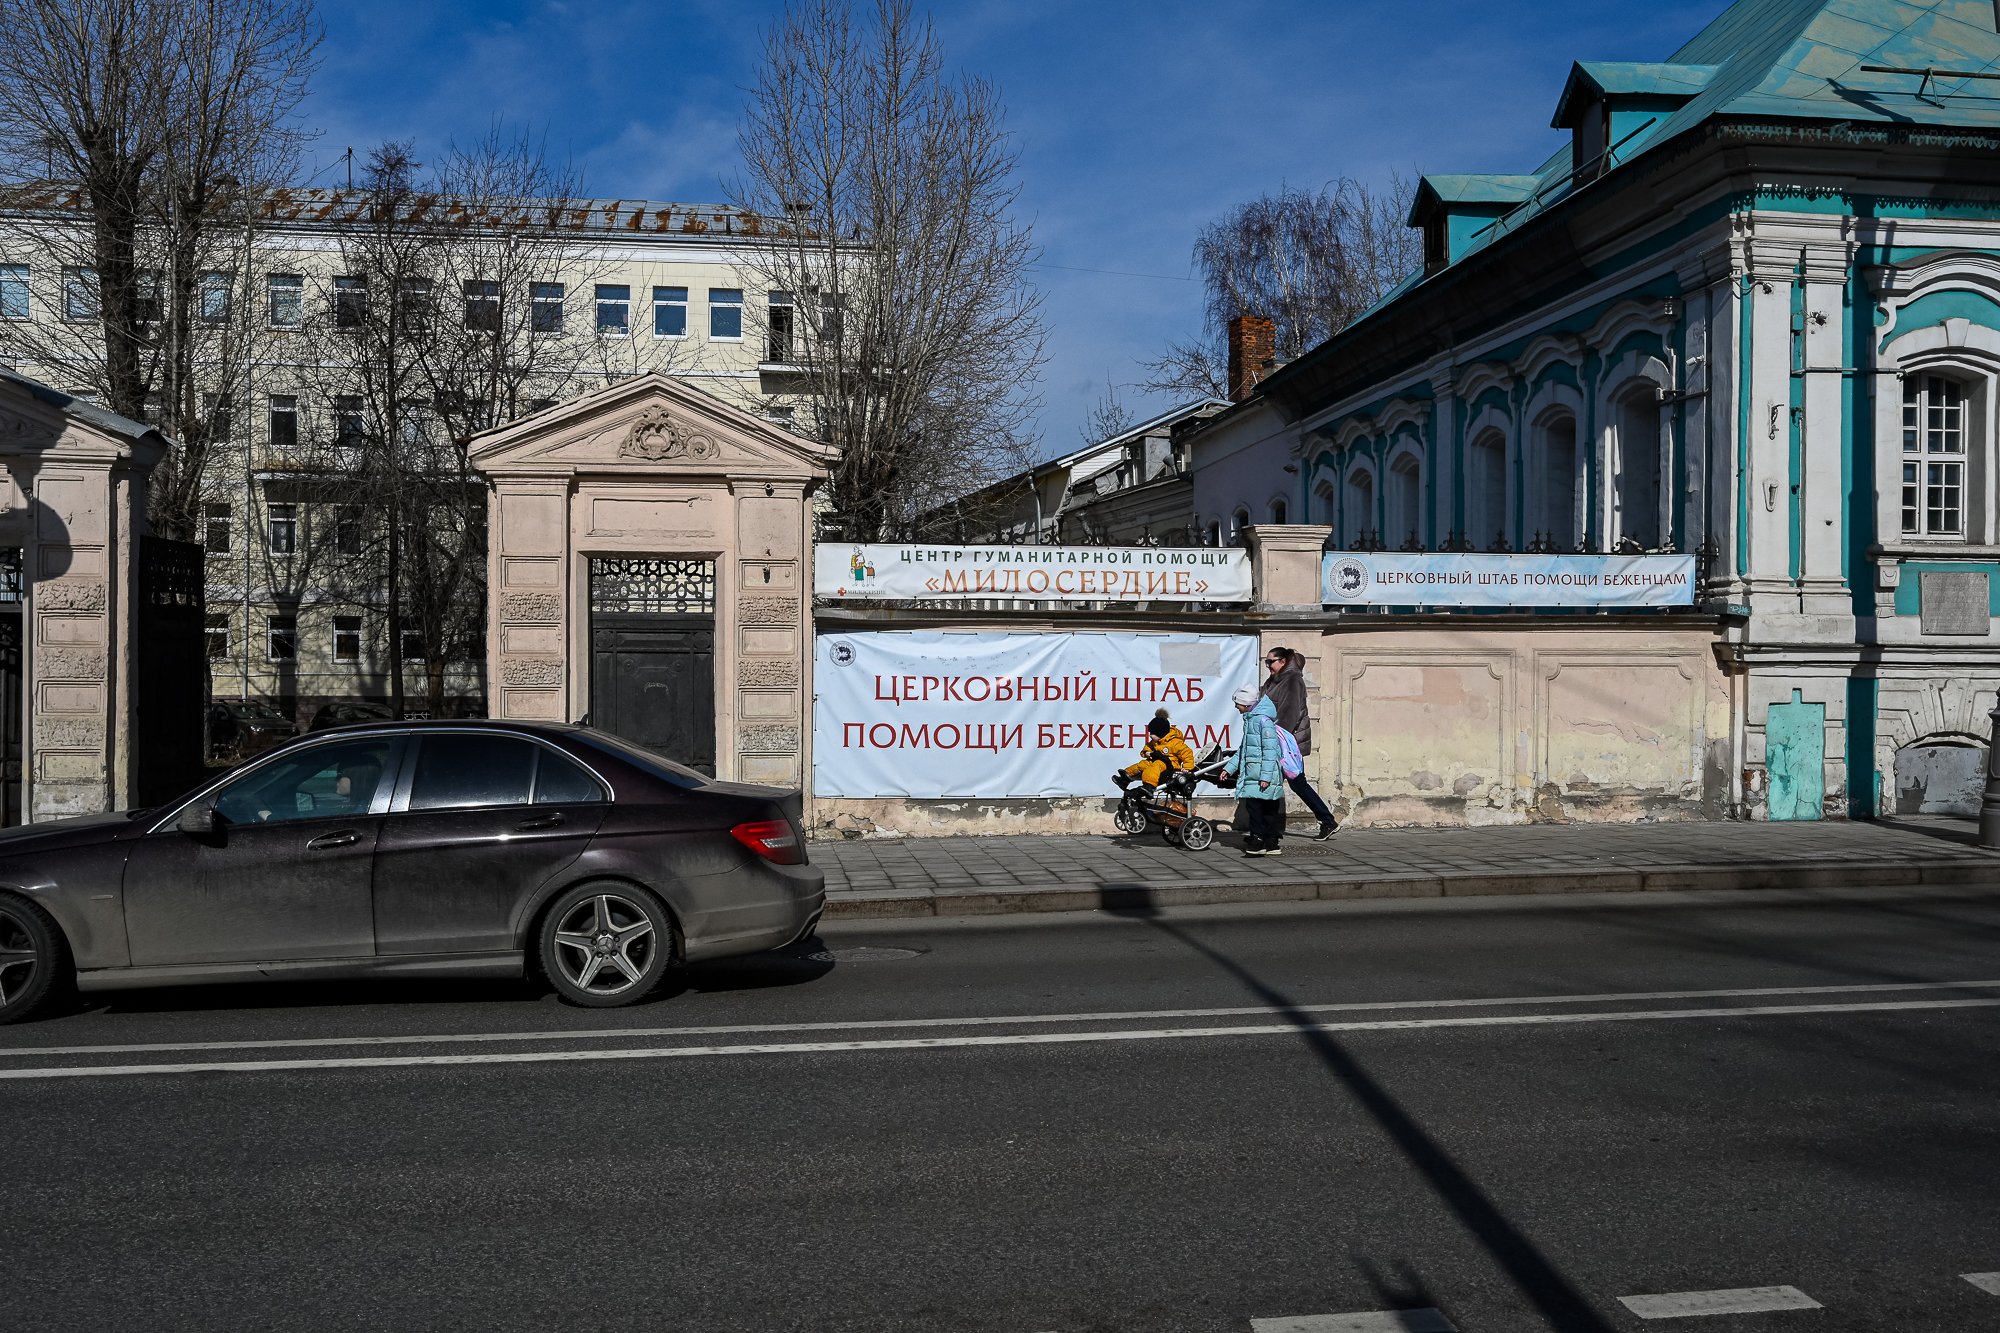 Гуманитарный центр службы «Милосердие» в Москве. Фото Марии Потокиной